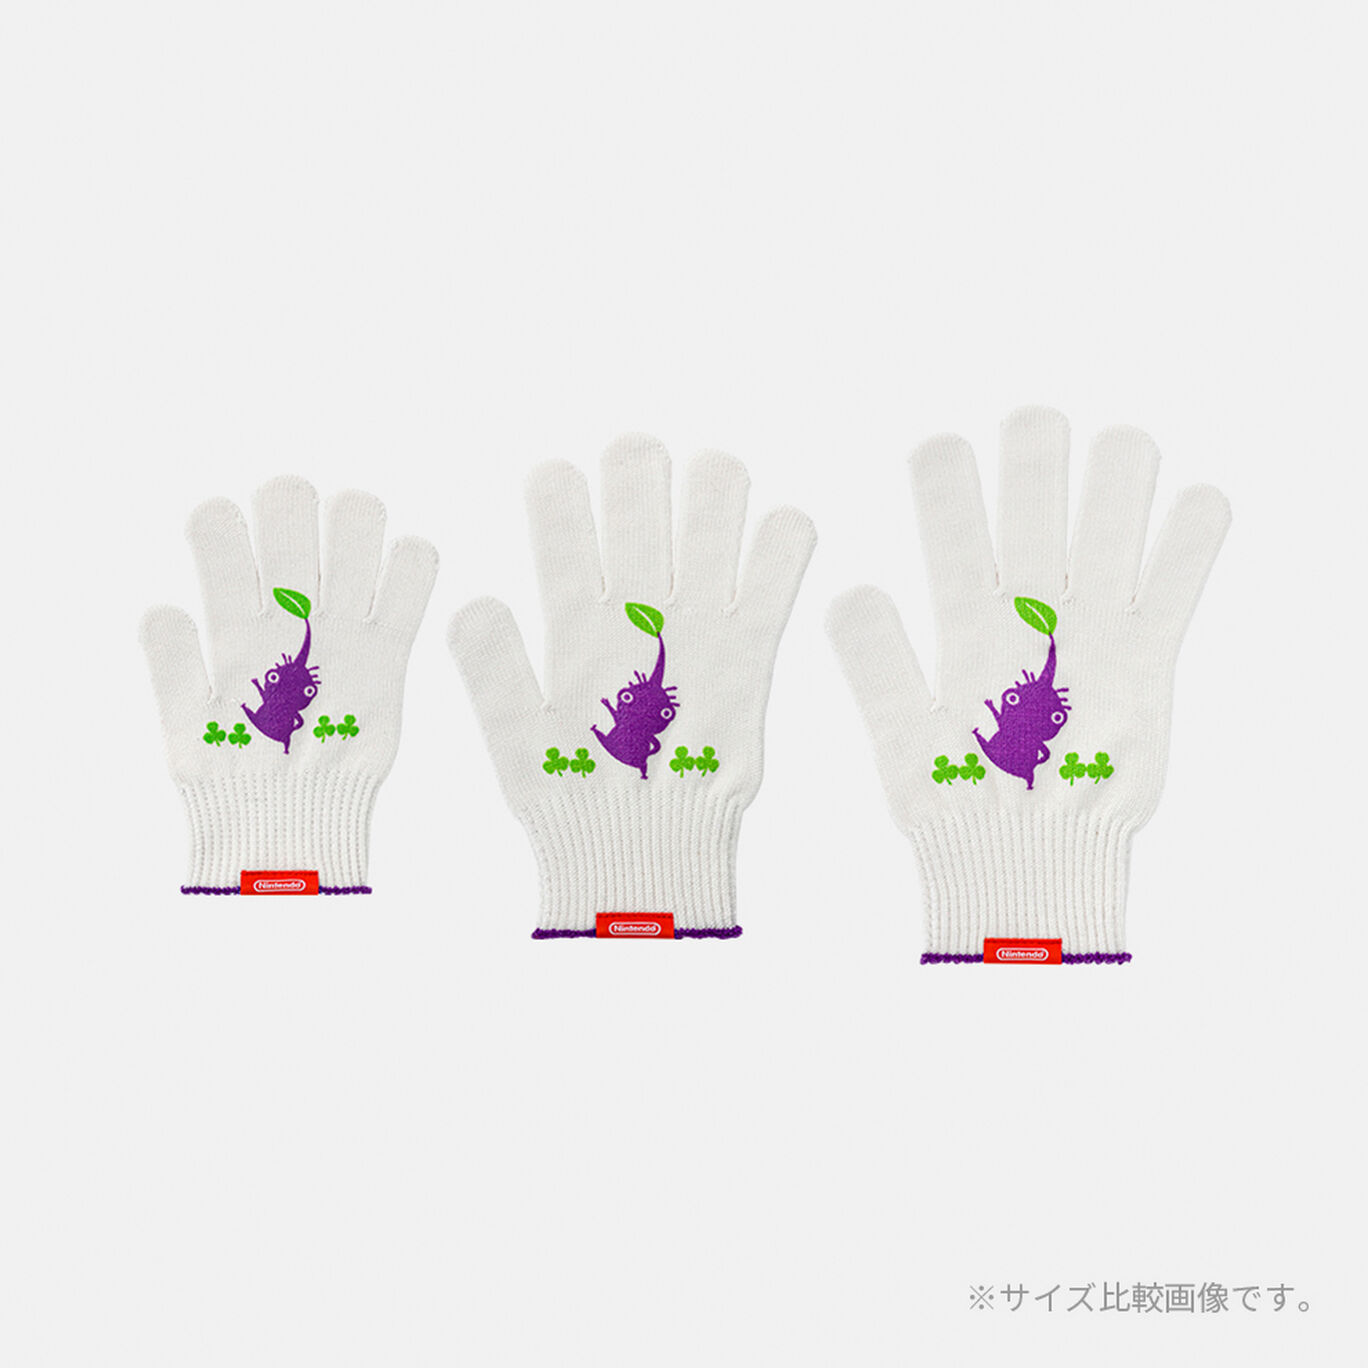 軍手 力持ちの紫ピクミン S PIKMIN【Nintendo TOKYO取り扱い商品】